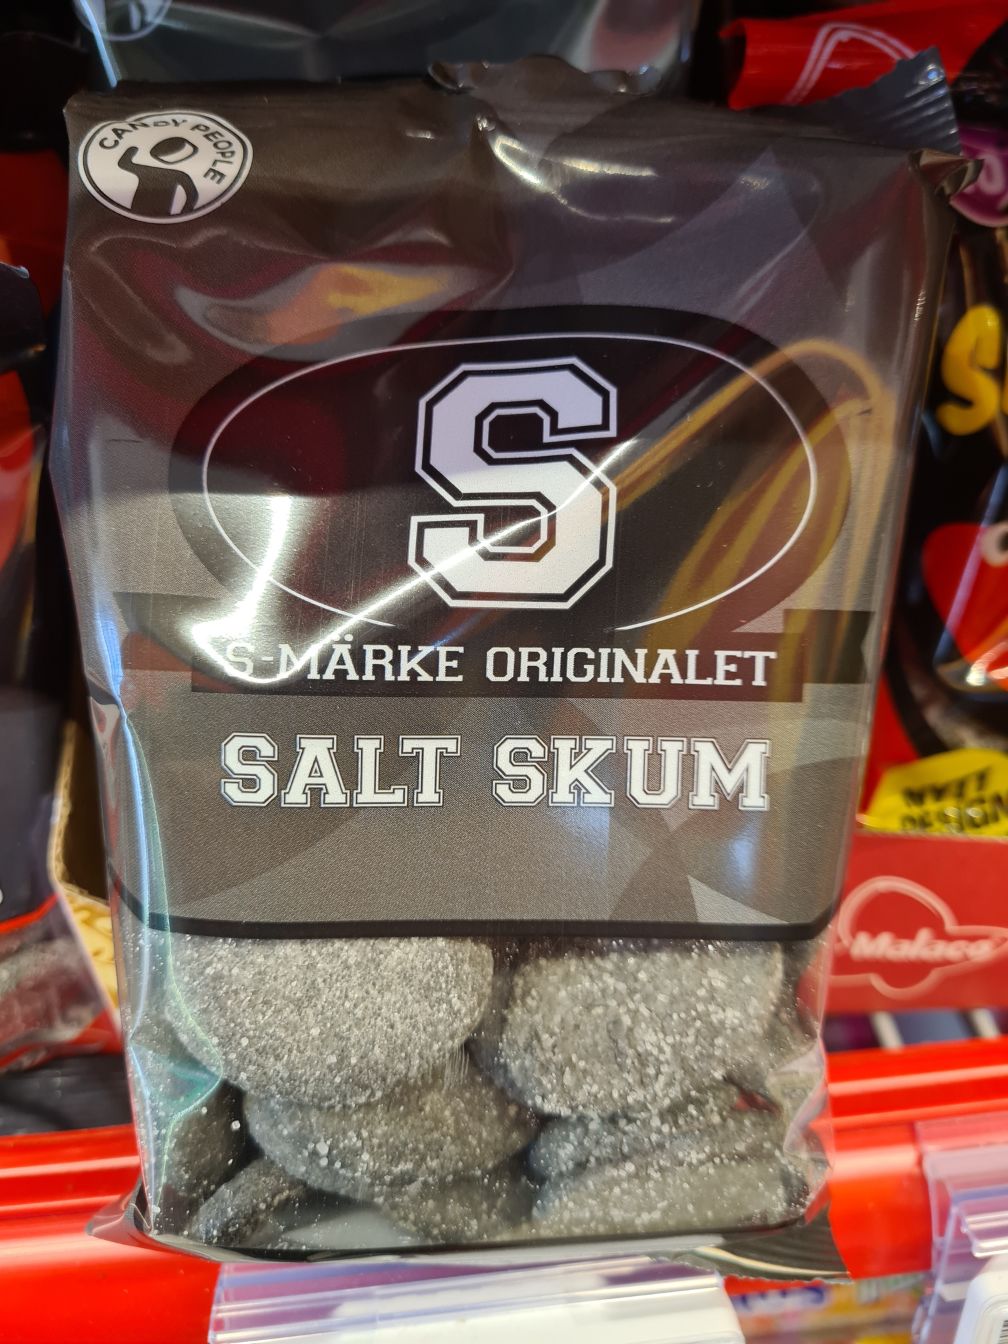 Packet of Salt Skum in a Norwegian supermarket. Photo: Daniel Albert.